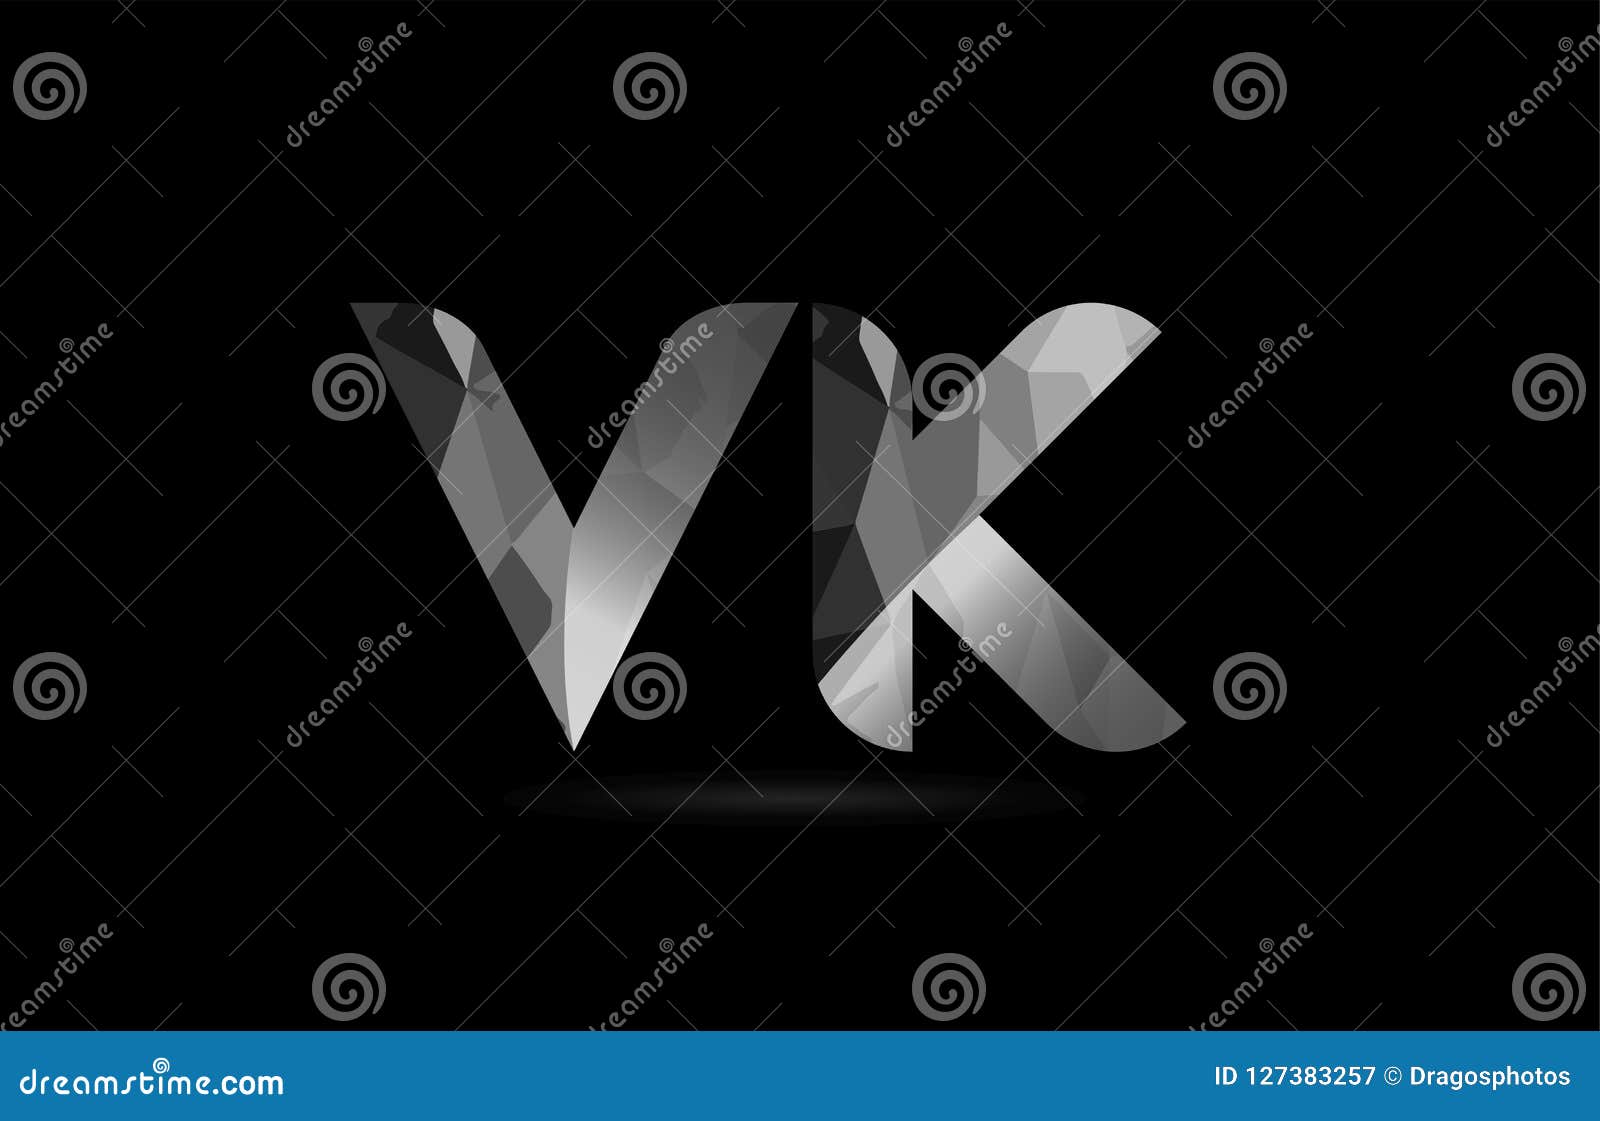 Black And White Alphabet Letter Vk V K Logo Combination Stock Vector